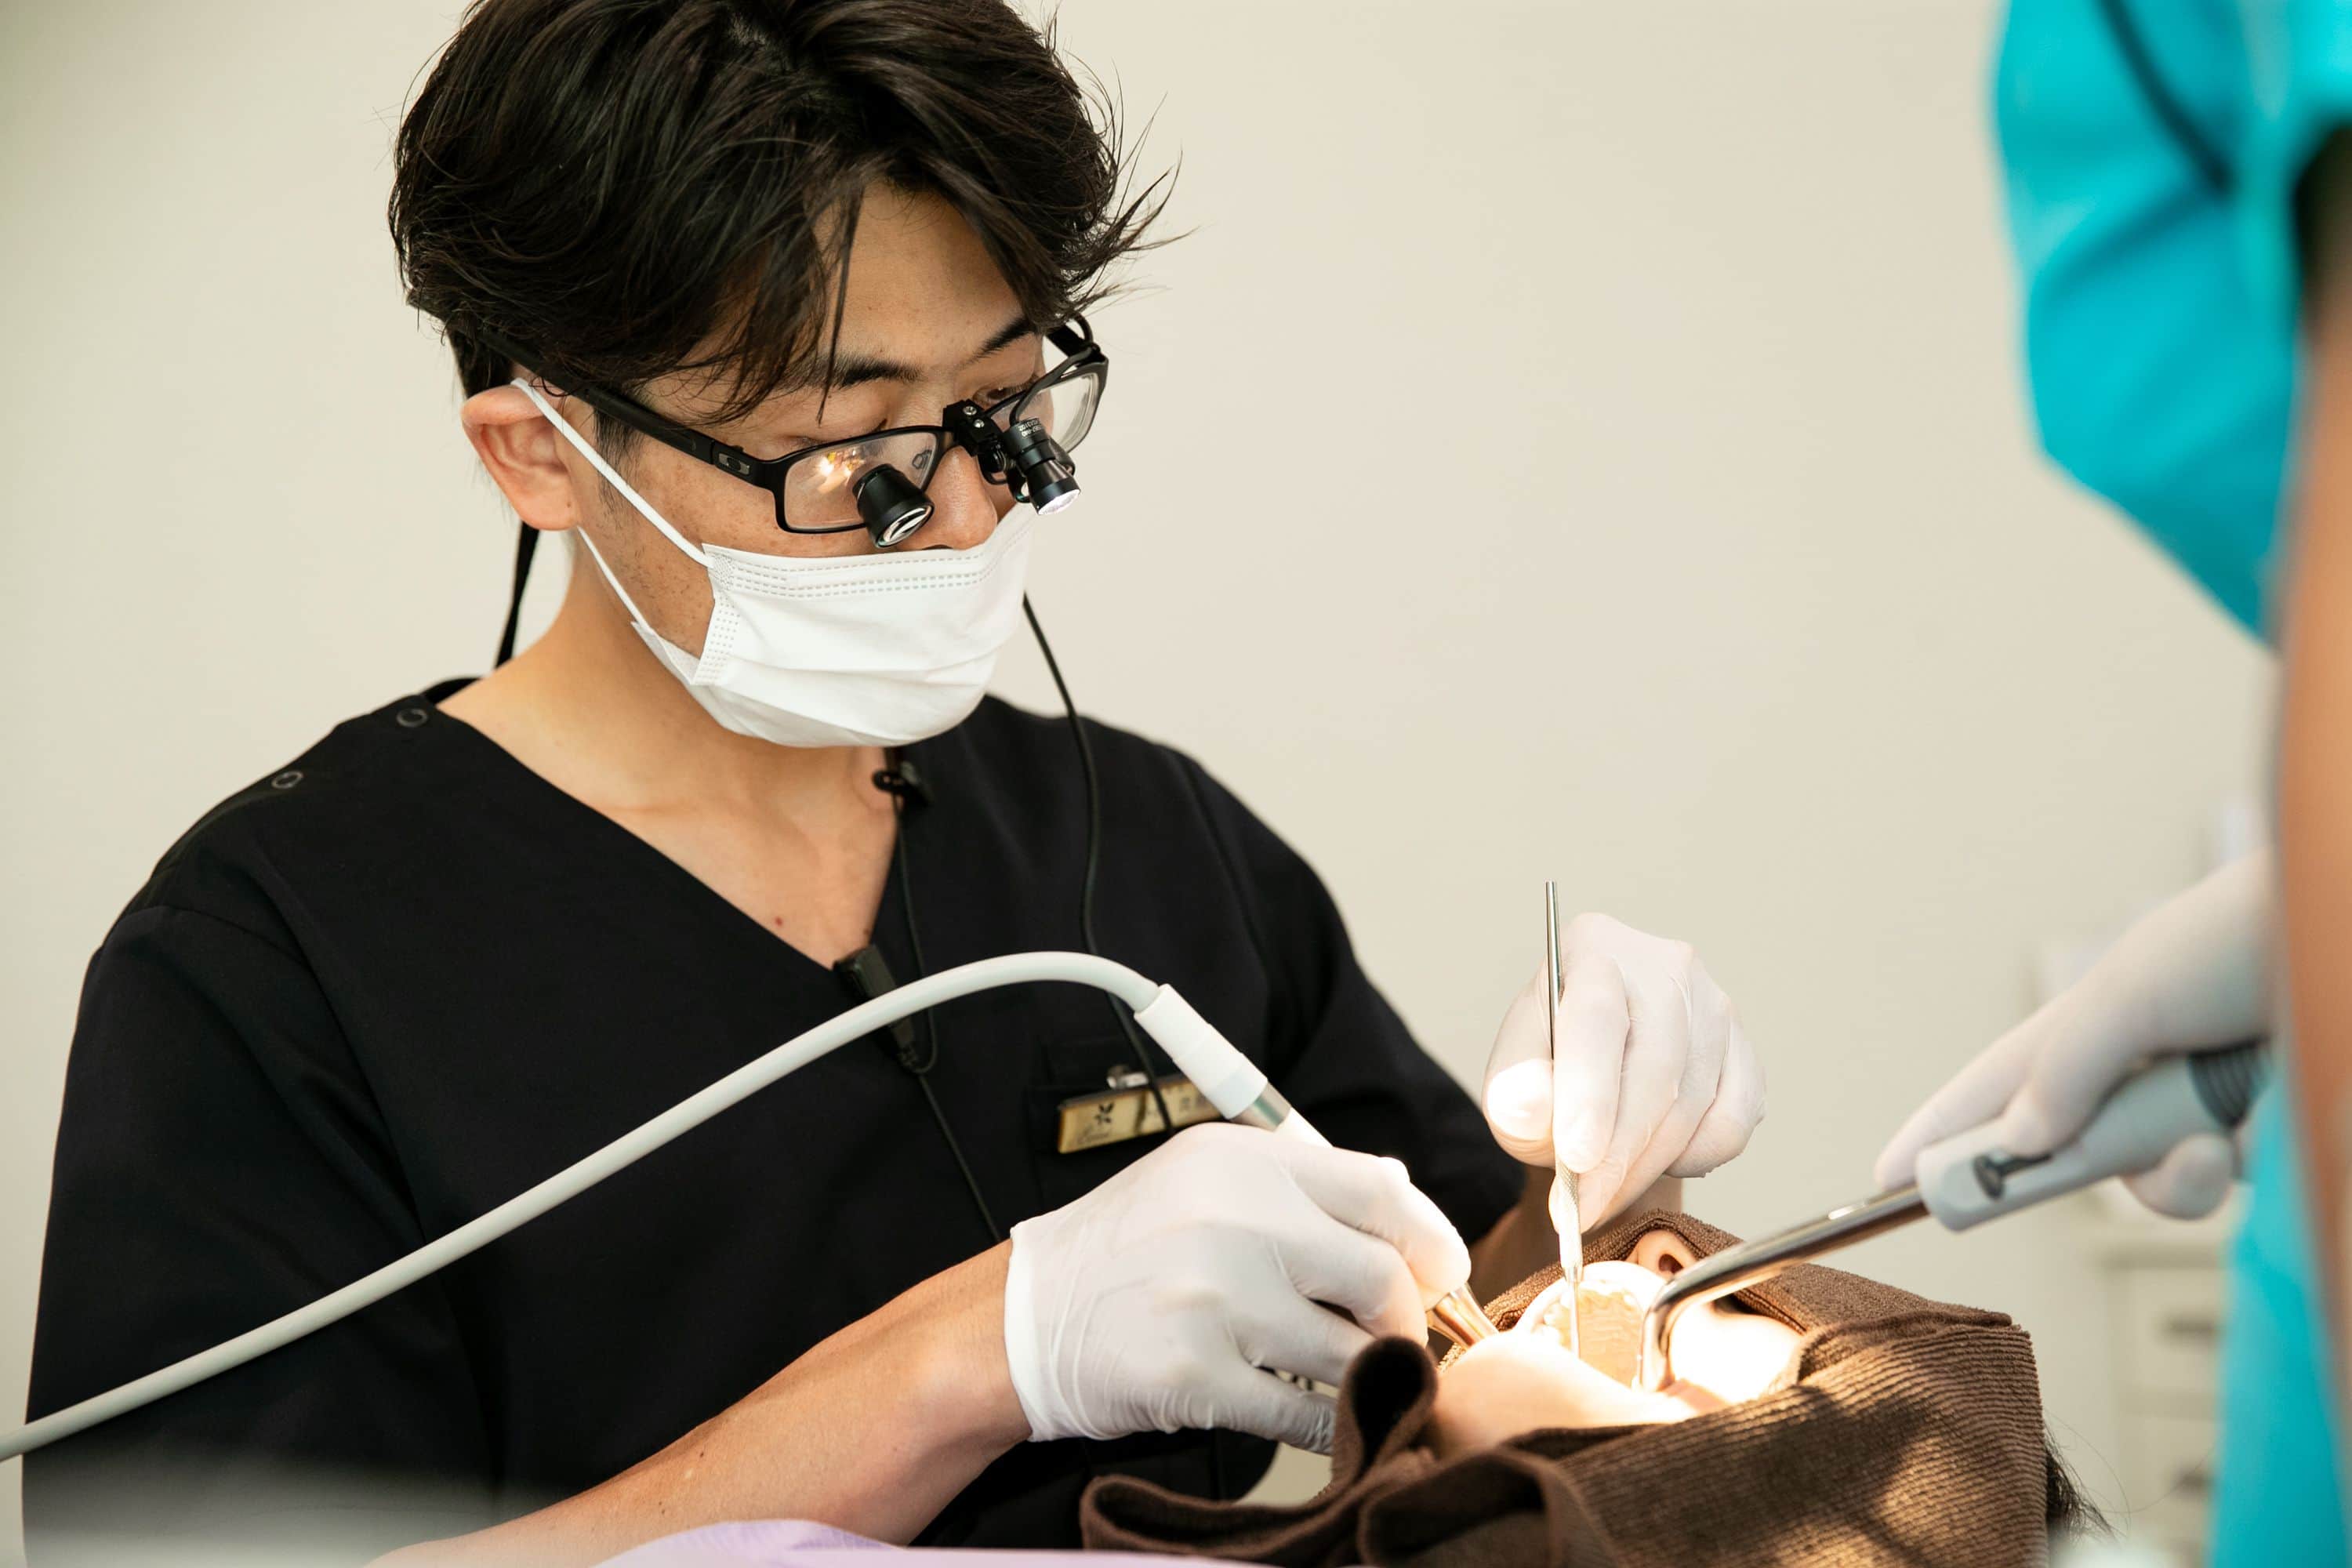 専門性の高い歯科診療、病診連携により安心していただける医療の提供